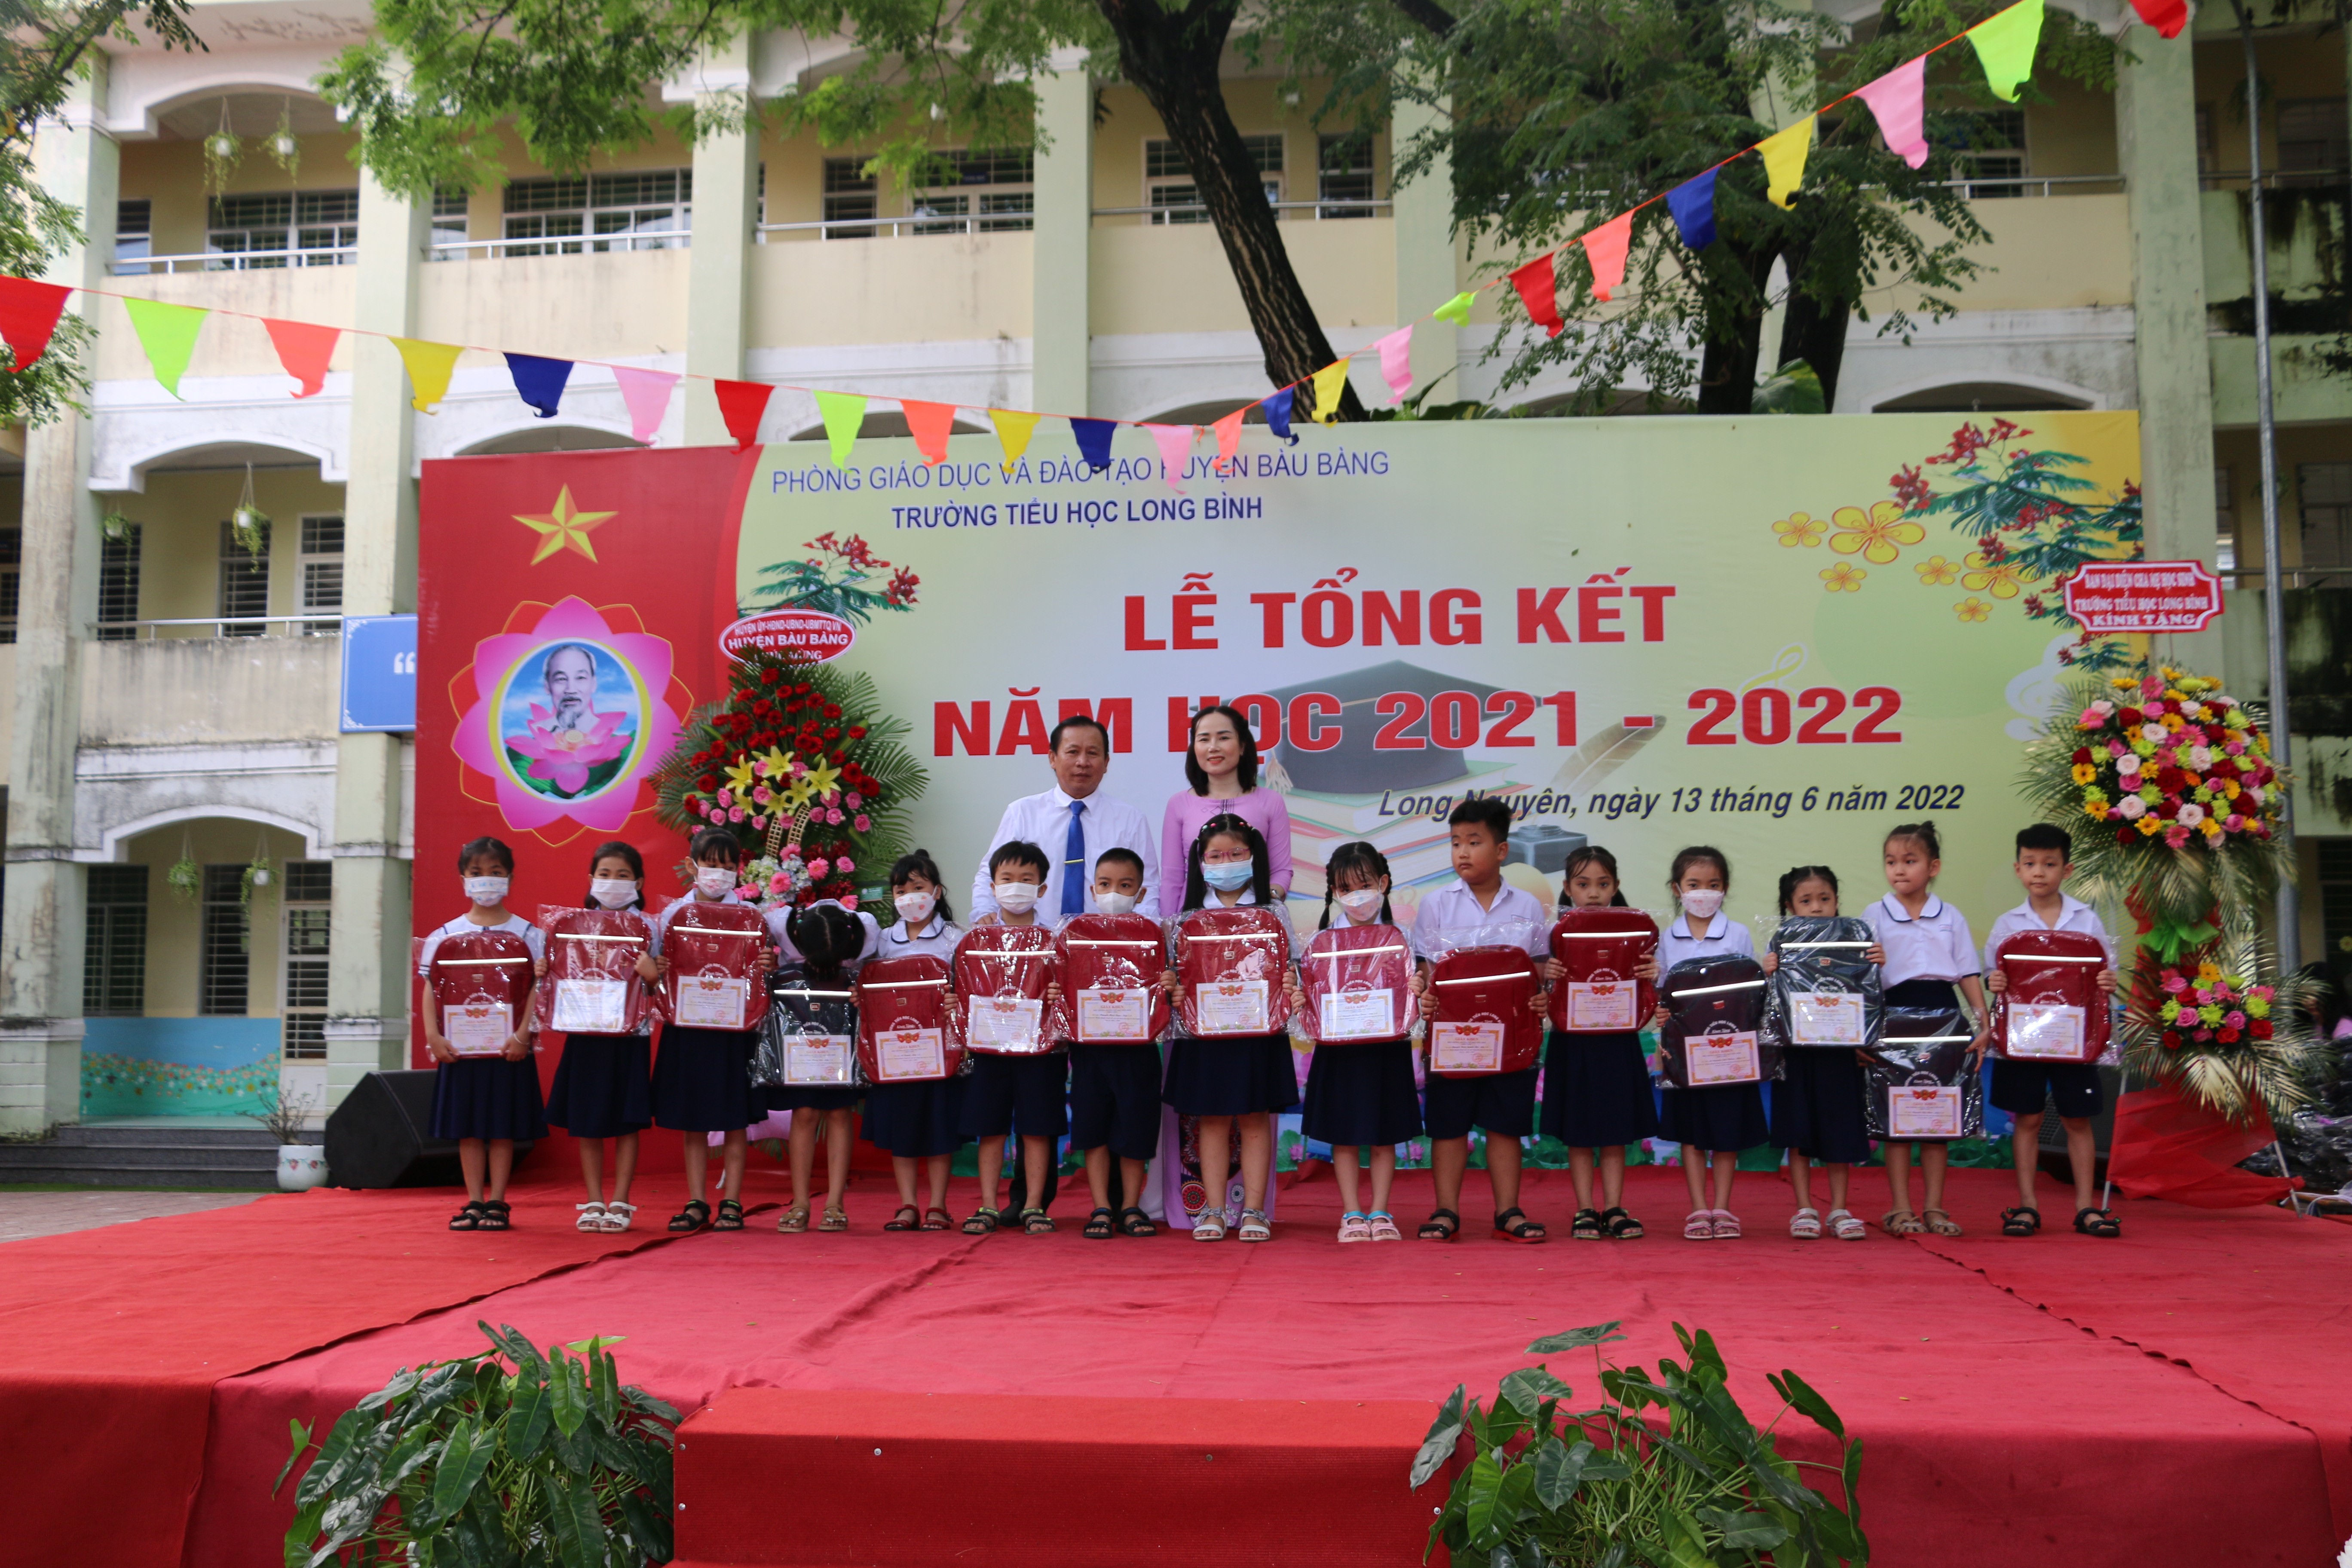 Ông Nguyễn Văn Đăng – Phó trưởng Phòng GDĐT huyện và cô Phan Thị Thúy Ngọc – Phó hiệu trưởng nhà trường trao thưởng cho các em học sinh.